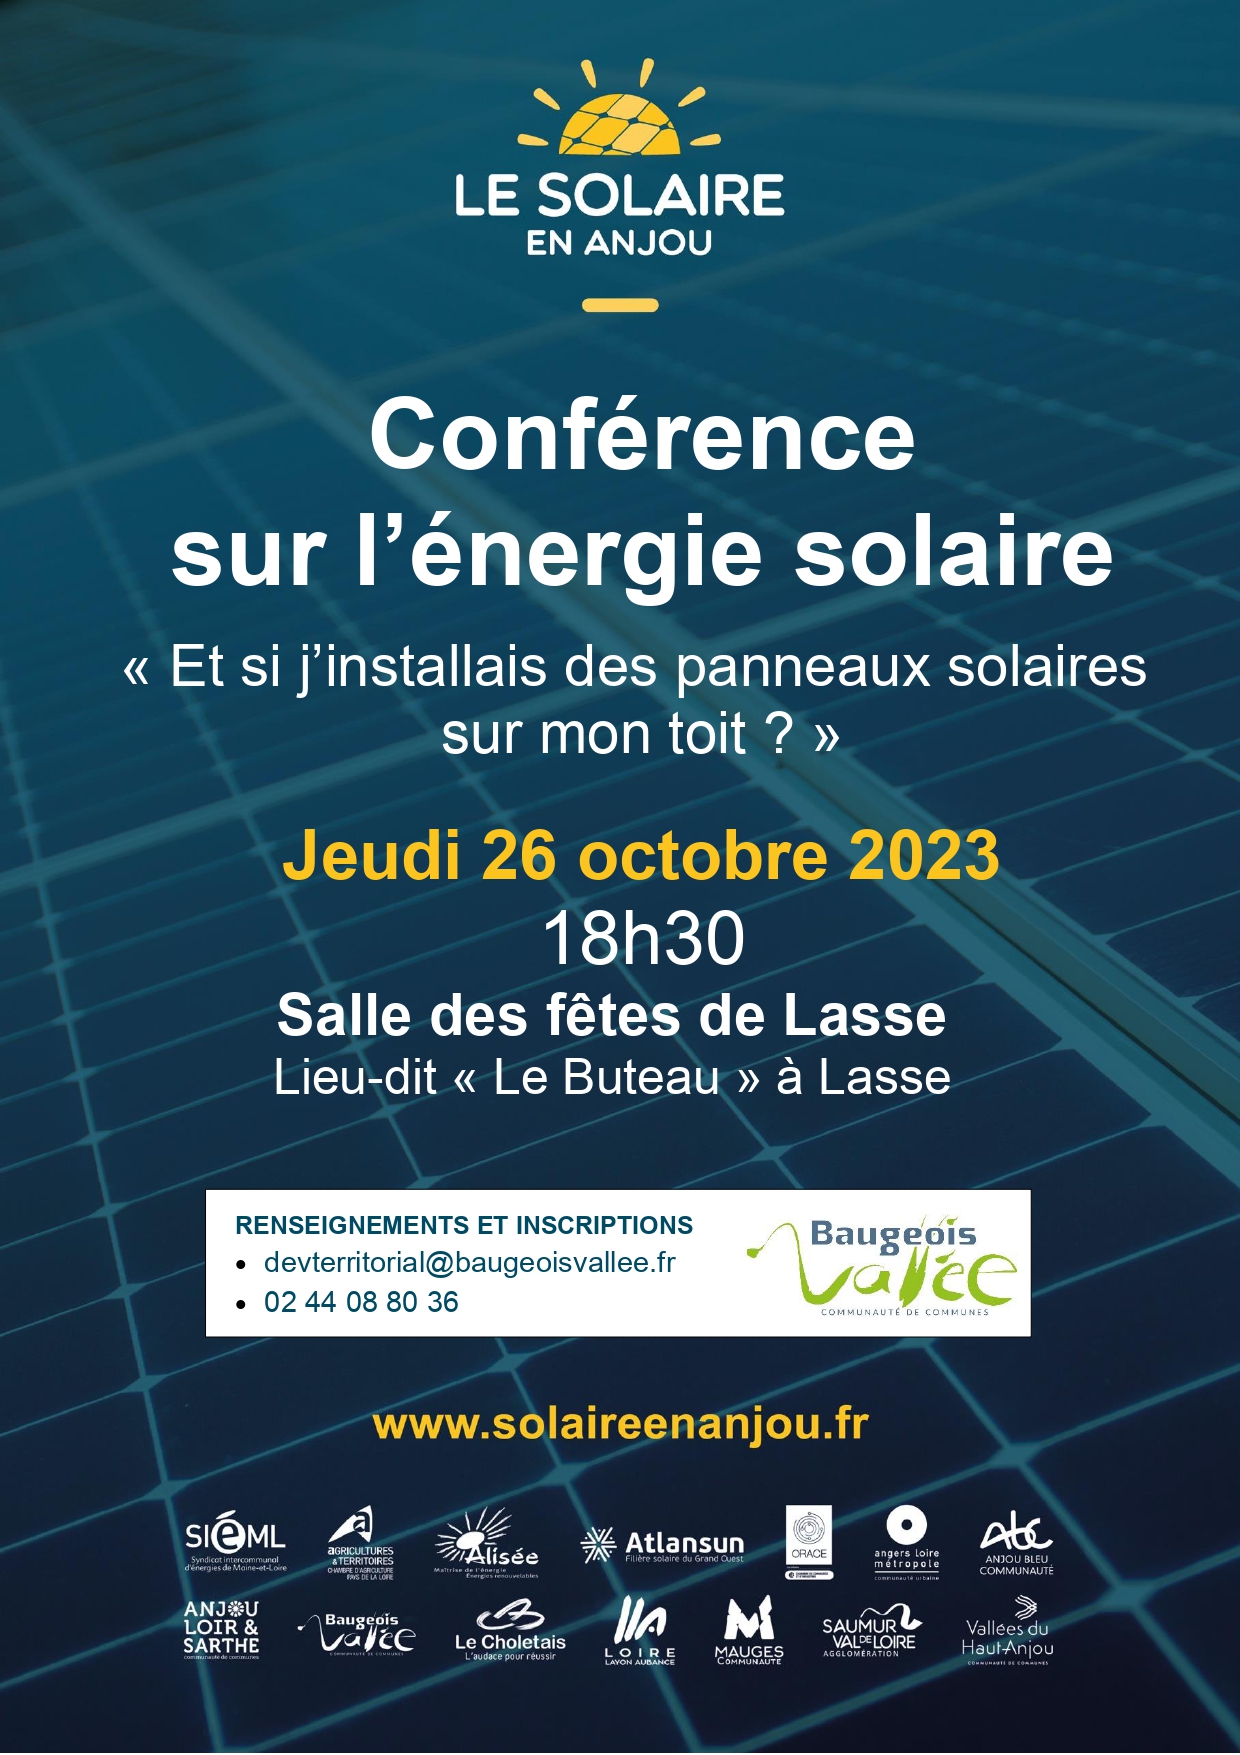 Lire la suite à propos de l’article Conférence sur l’énergie solaire